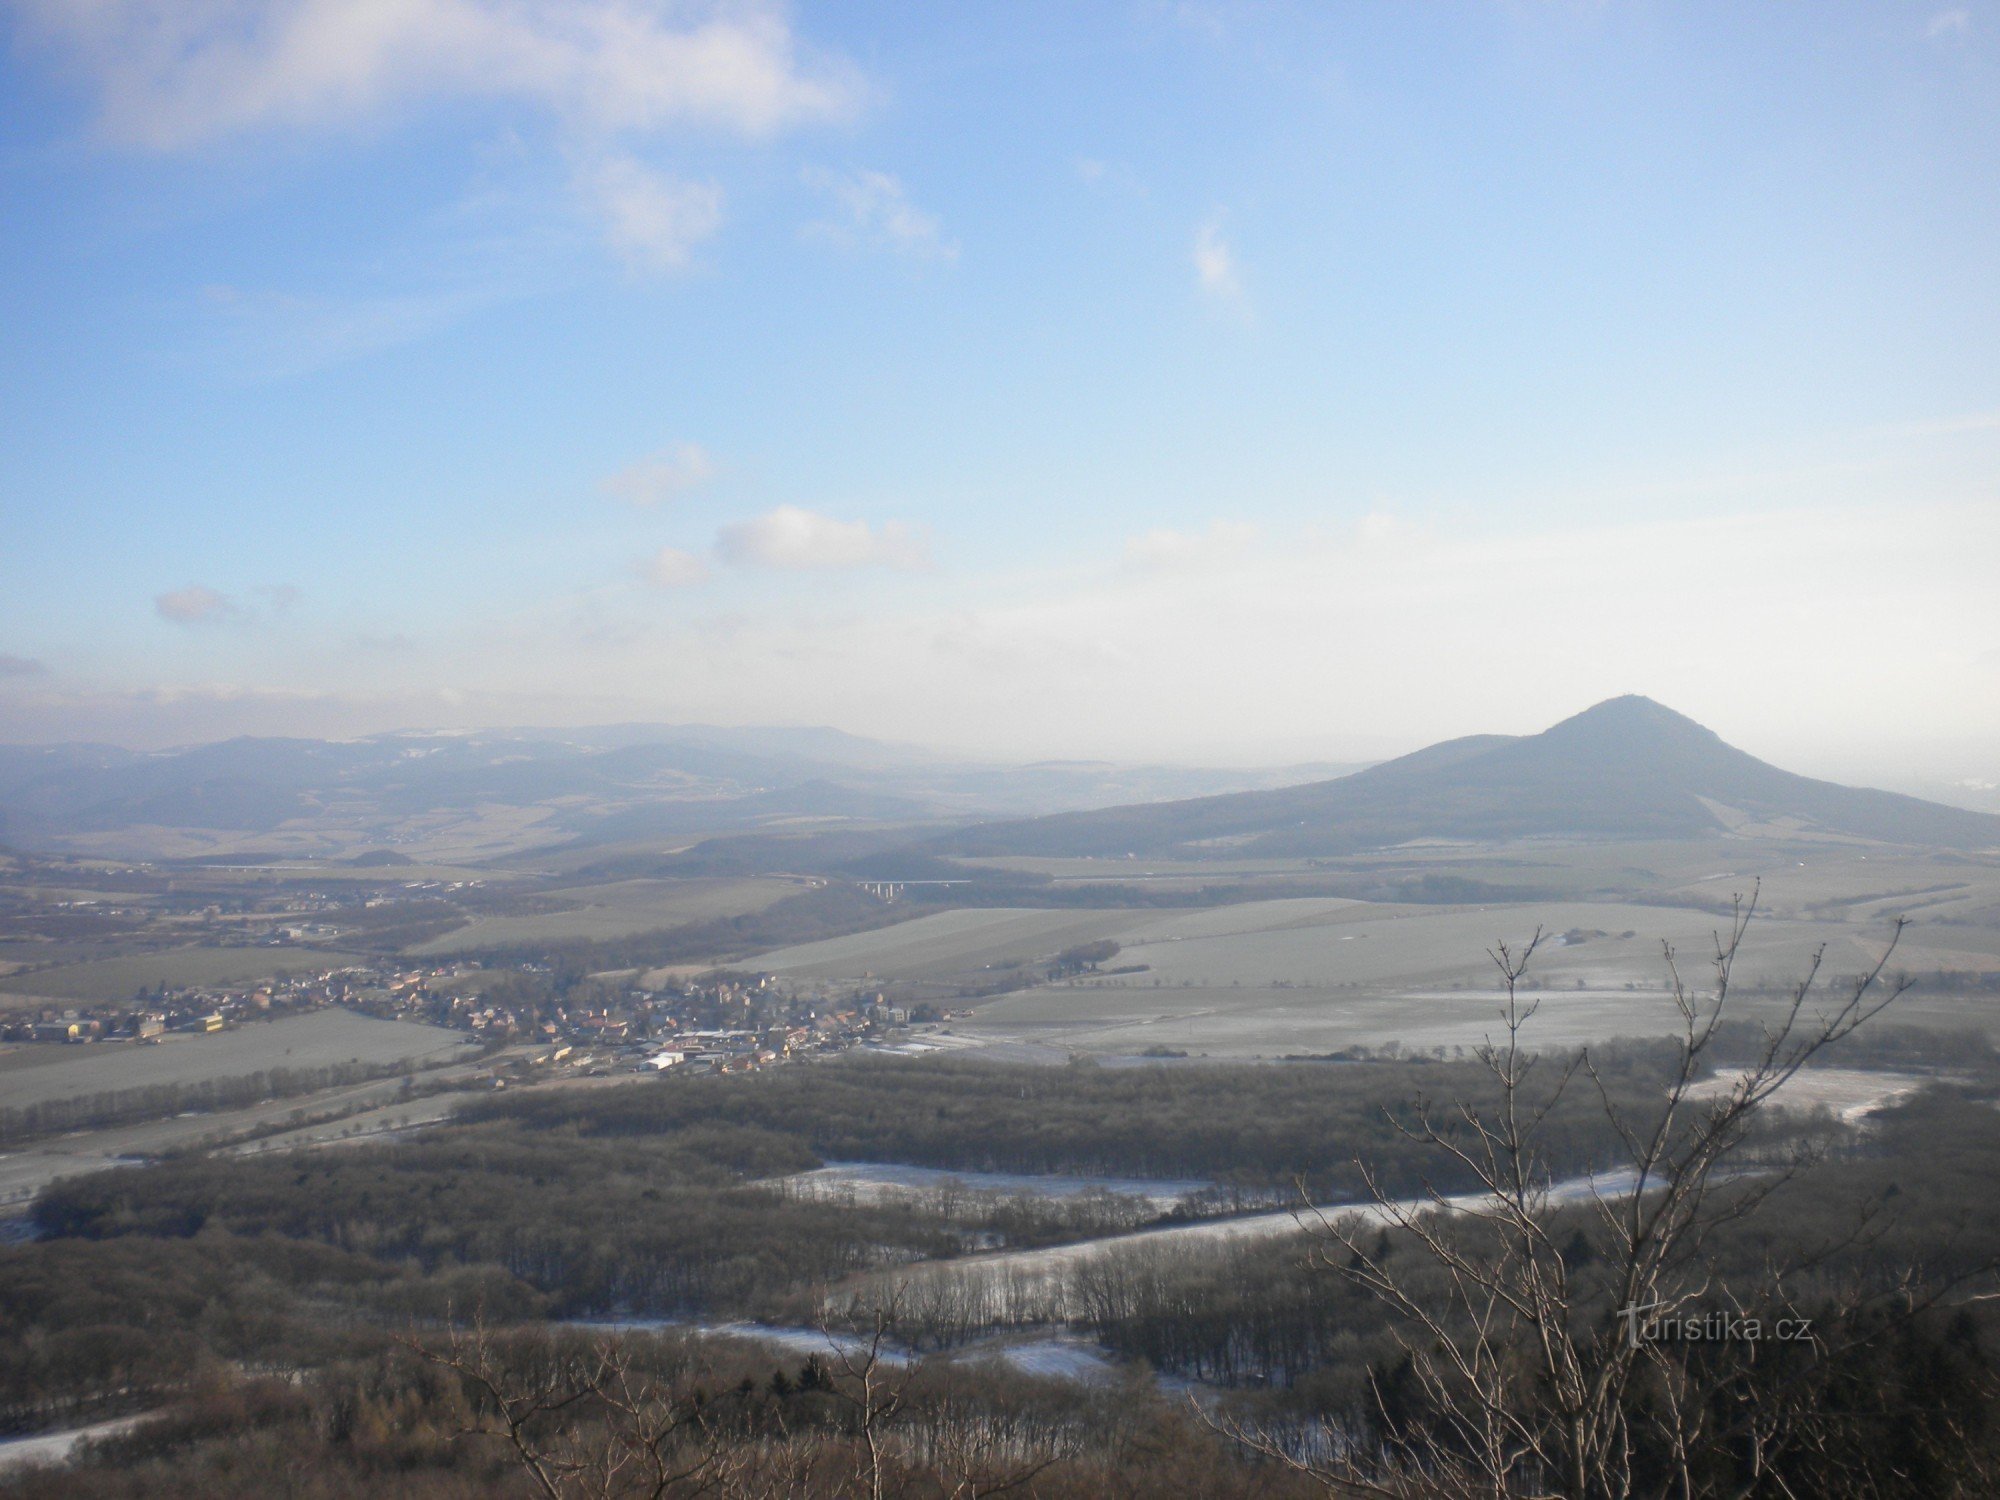 Pogled na pokrajino z gradu Ostrý proti vzhodu. V ospredju hrib Lovoš.